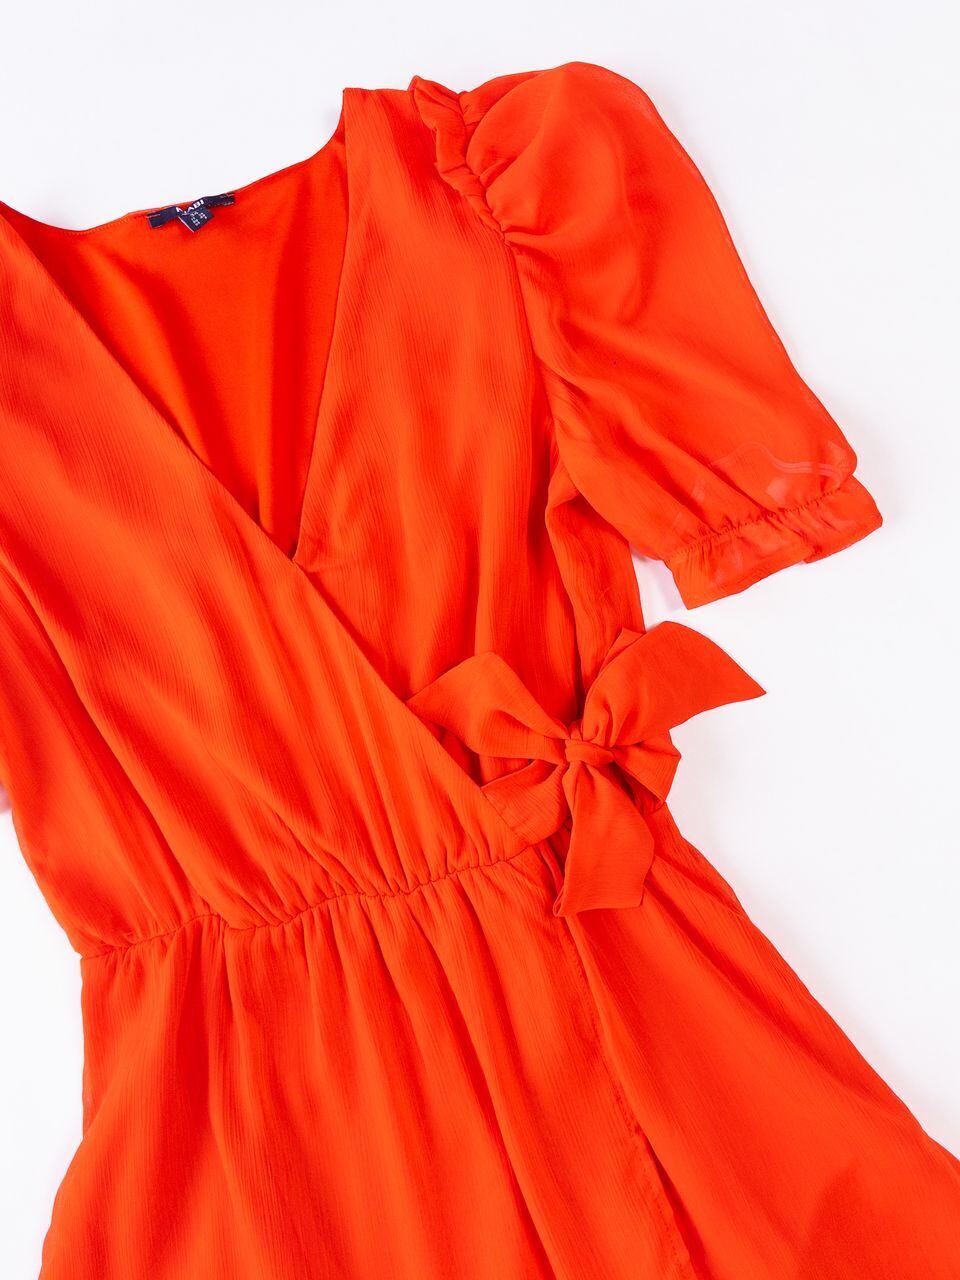 Платье легкое на подкладке цвет морковный размер EUR 34 (rus 40) KIABI